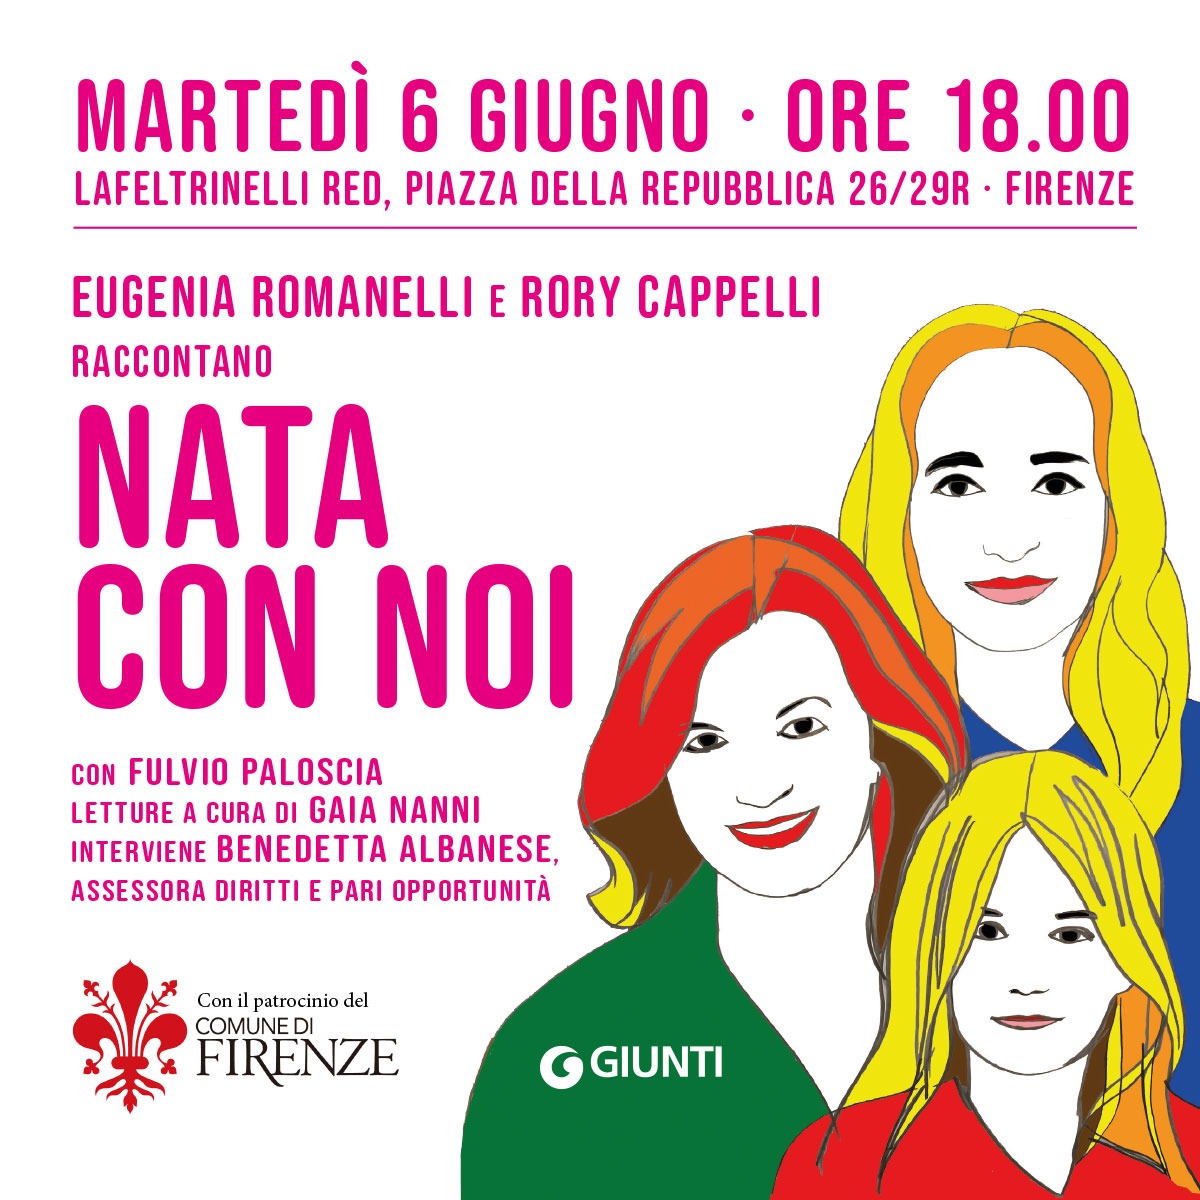 Eugenia Romanelli e Rory Cappelli presentano "Nata con noi". Appuntamento a Firenze